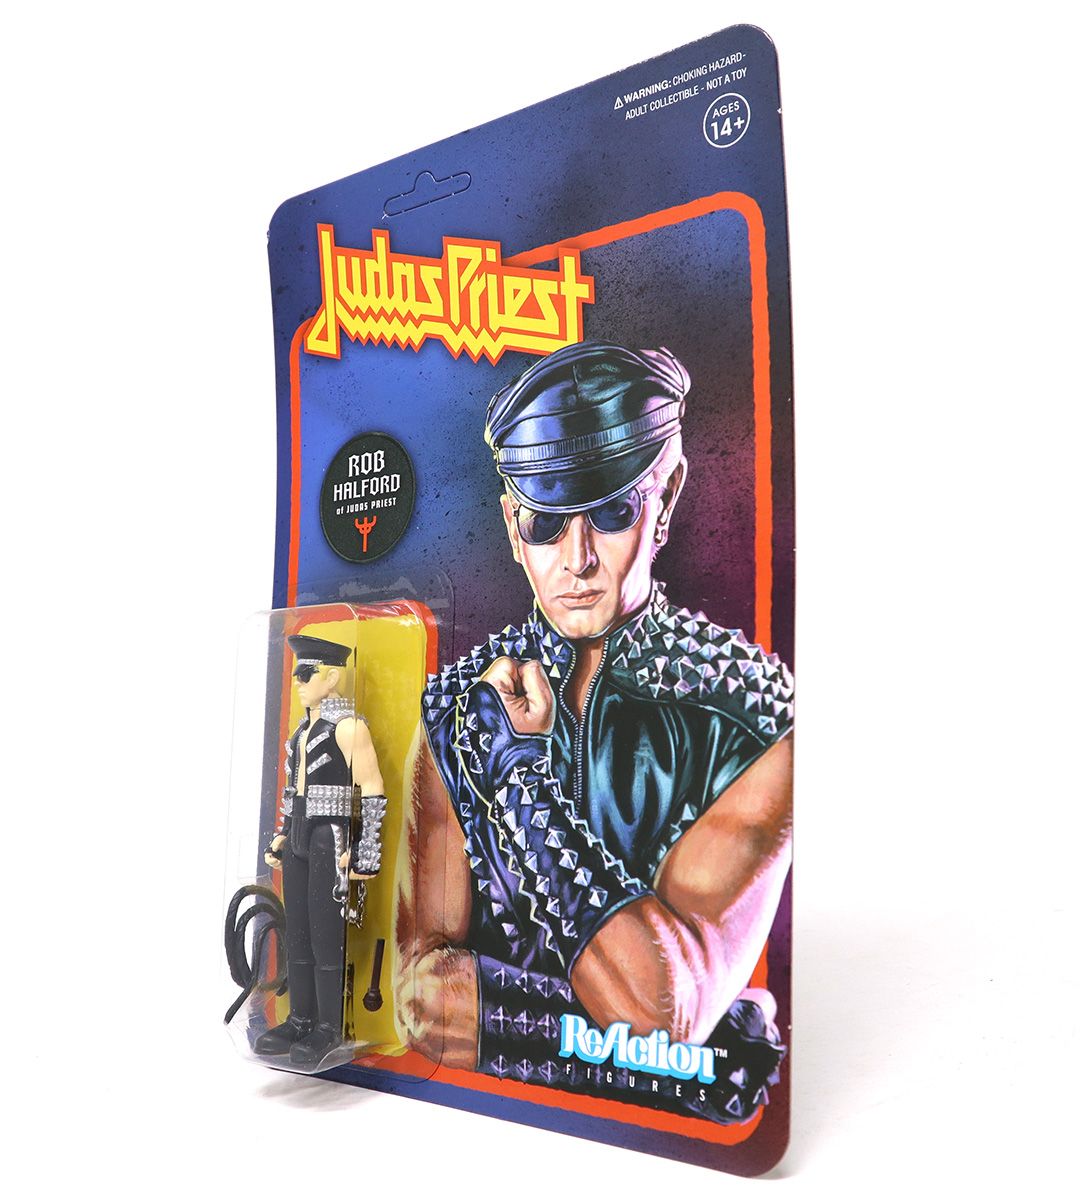 Judas Priest - ReAction figure